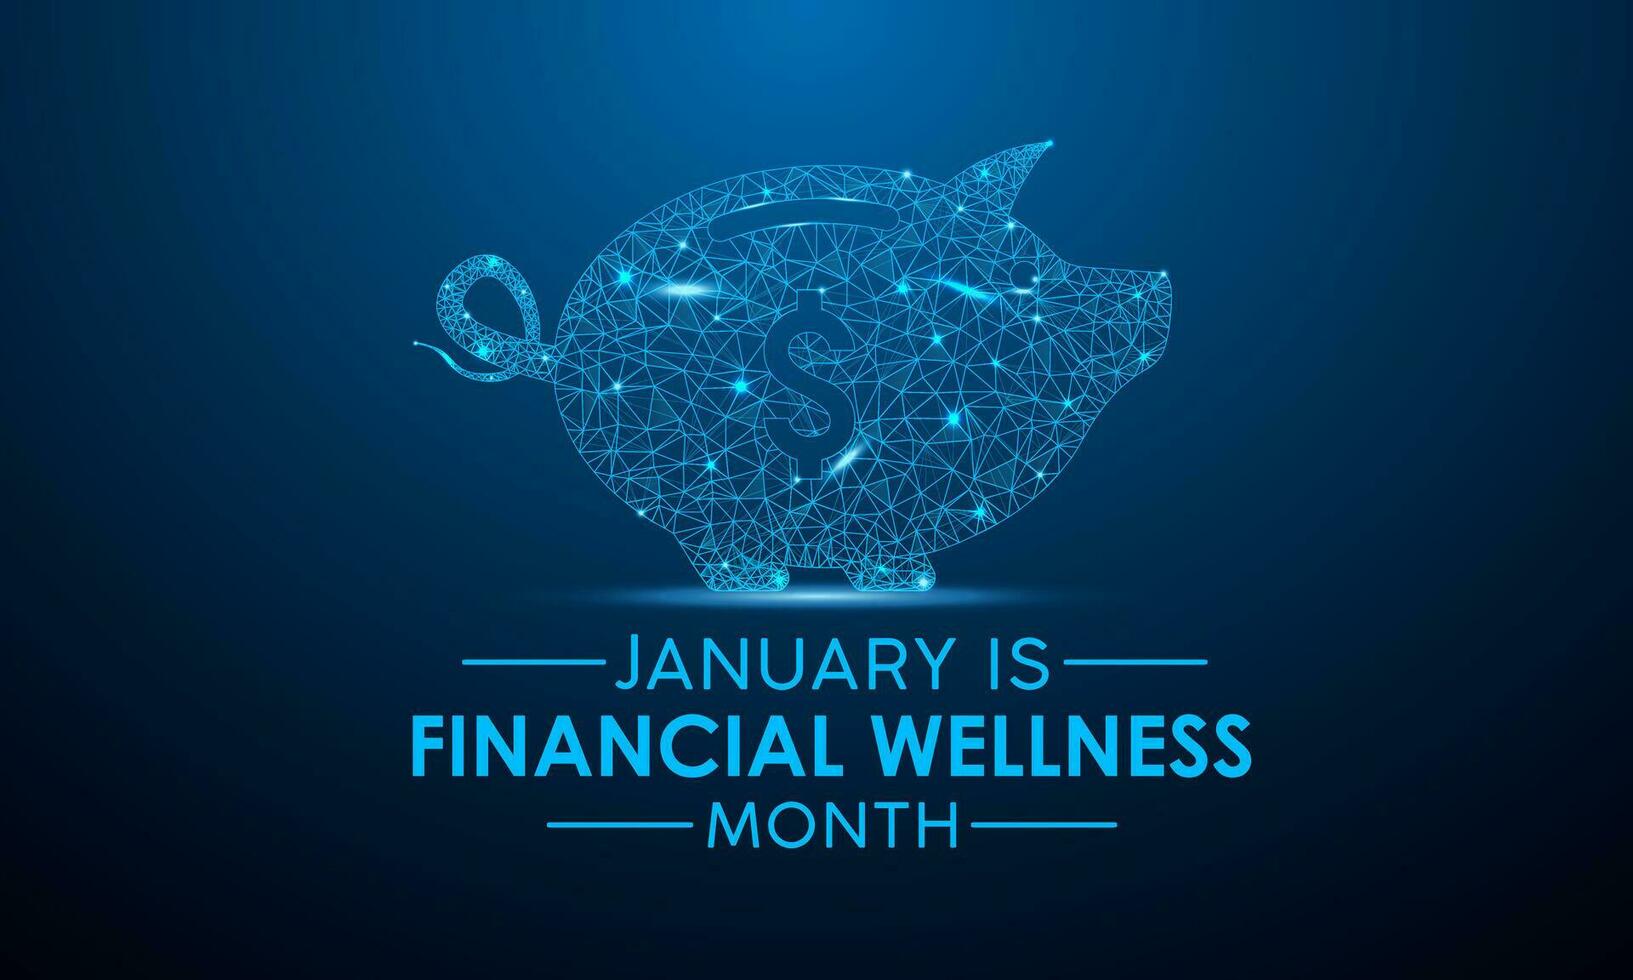 finanziell Wellness Monat ist beobachtete jeder Jahr im Januar. Januar ist finanziell Wellness Monat. niedrig poly Stil Design. Vektor Vorlage zum Banner, Gruß Karte, Poster mit dunkel Blau Hintergrund.